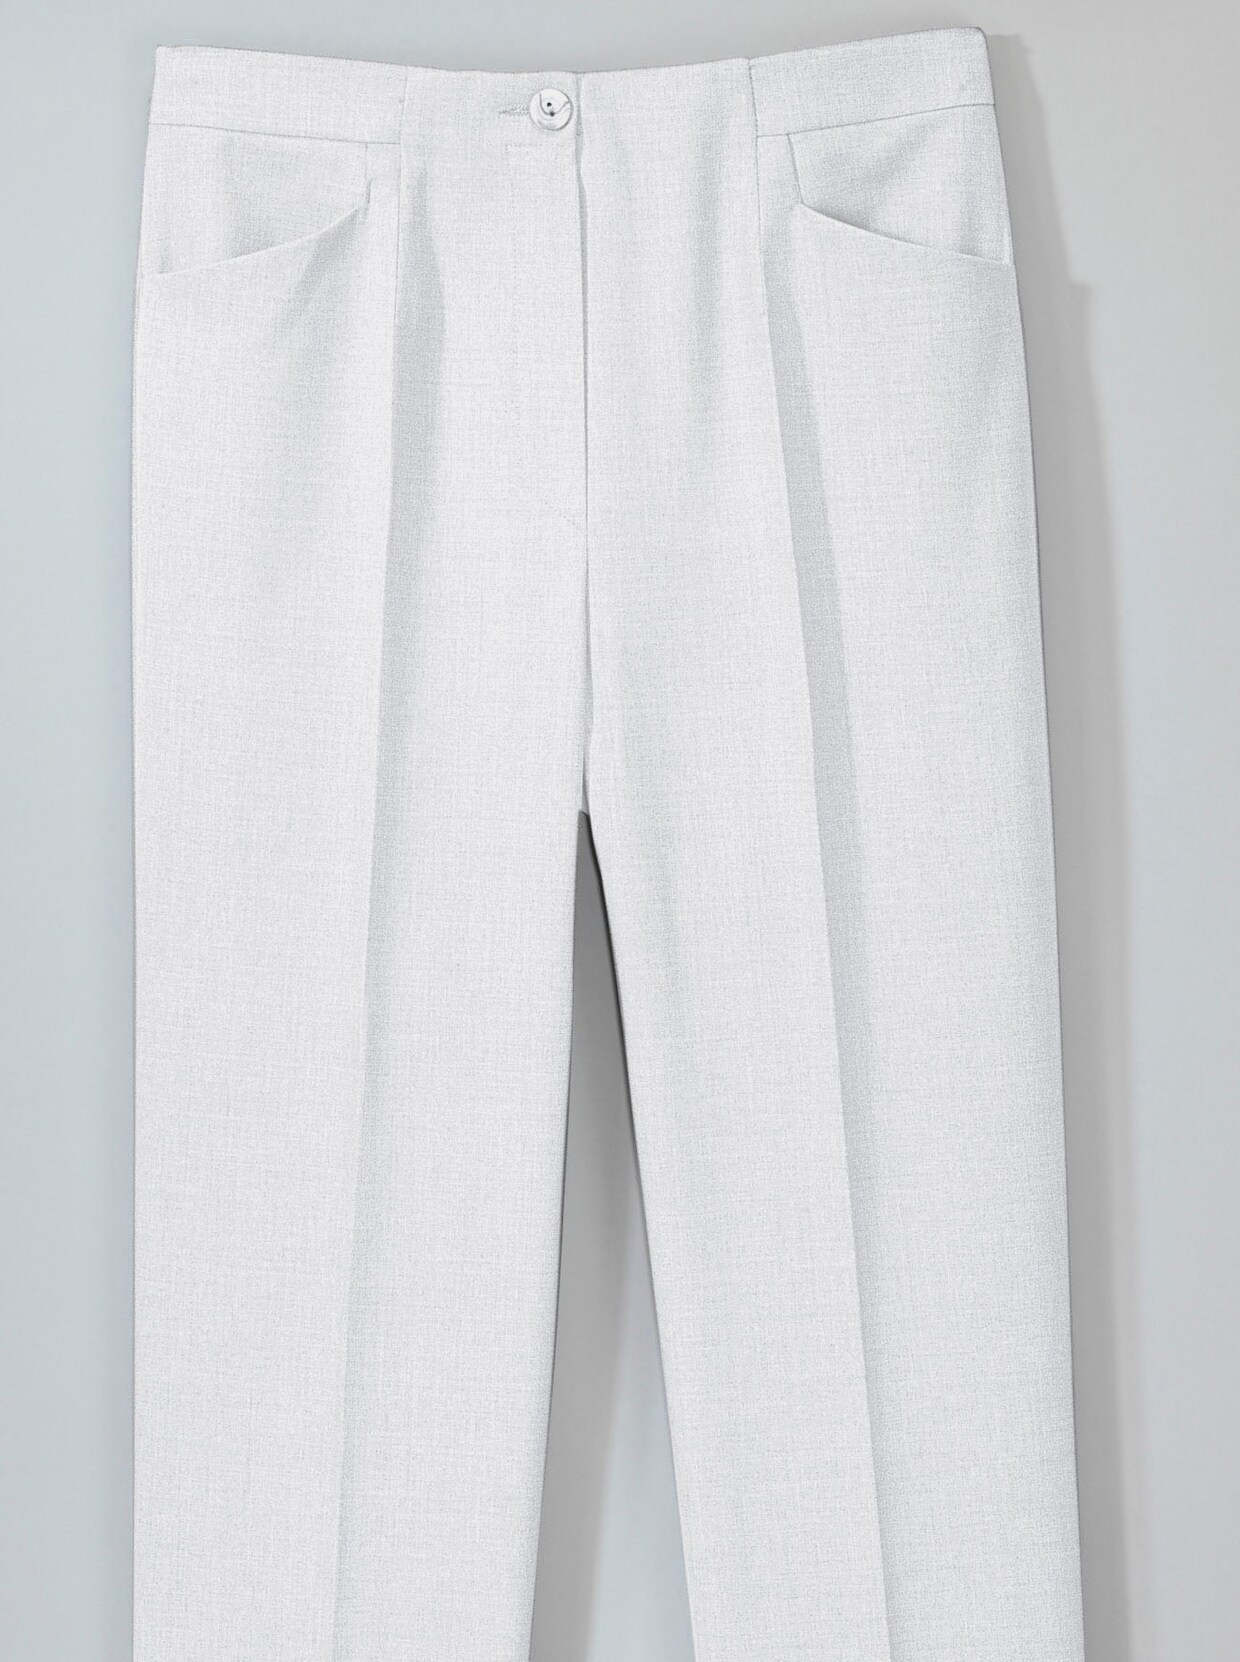 Come on Pantalon plissé - blanc